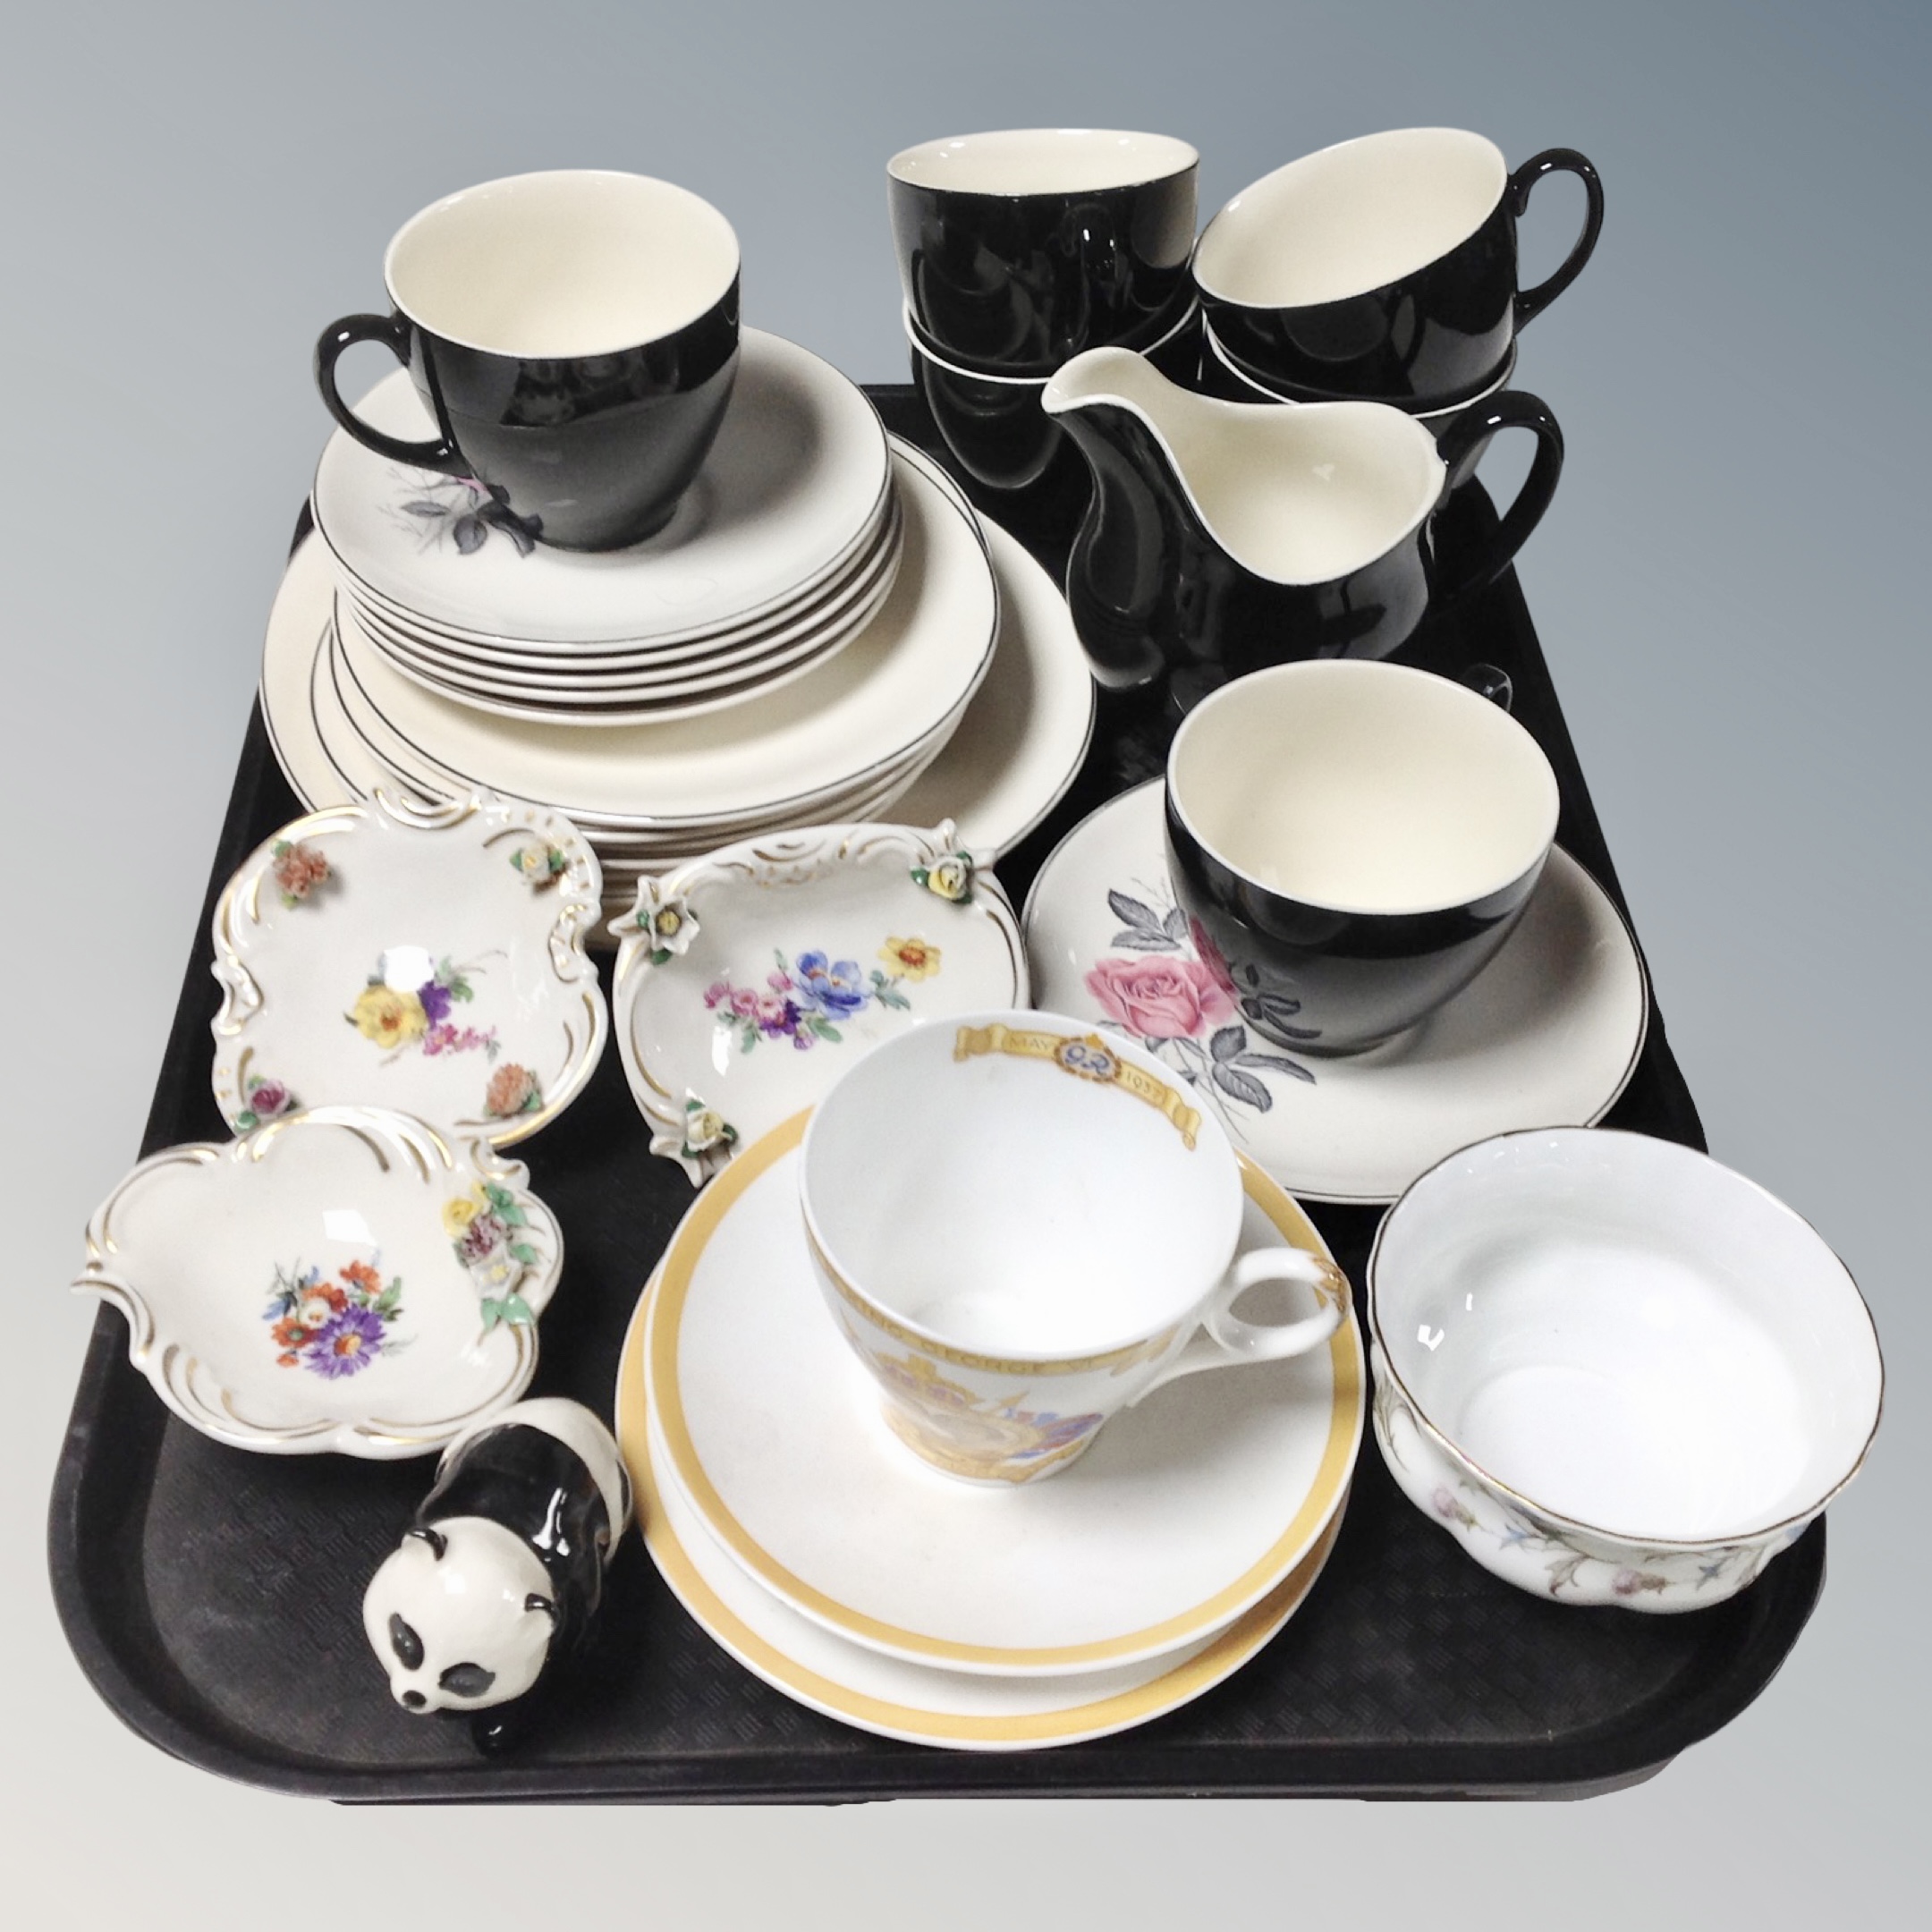 A tray of Johnson Brothers tea china, Royal Albert Brigadoon sugar bowl, Dresden porcelain dishes.